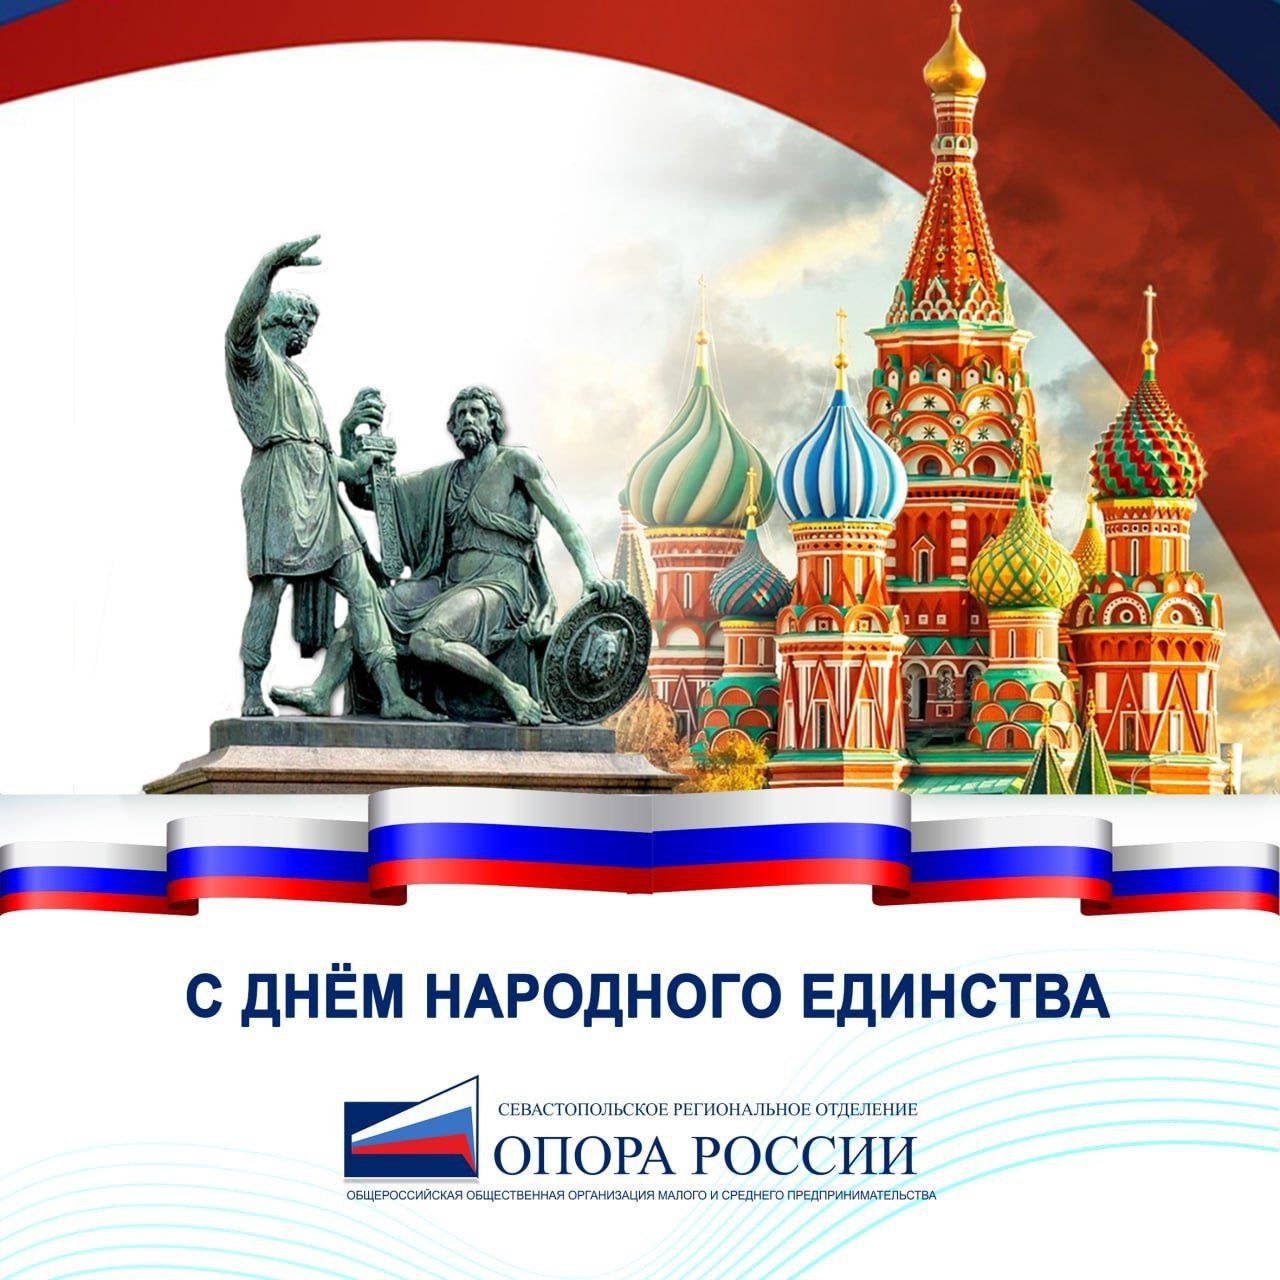 День русской нации 5 апреля картинки